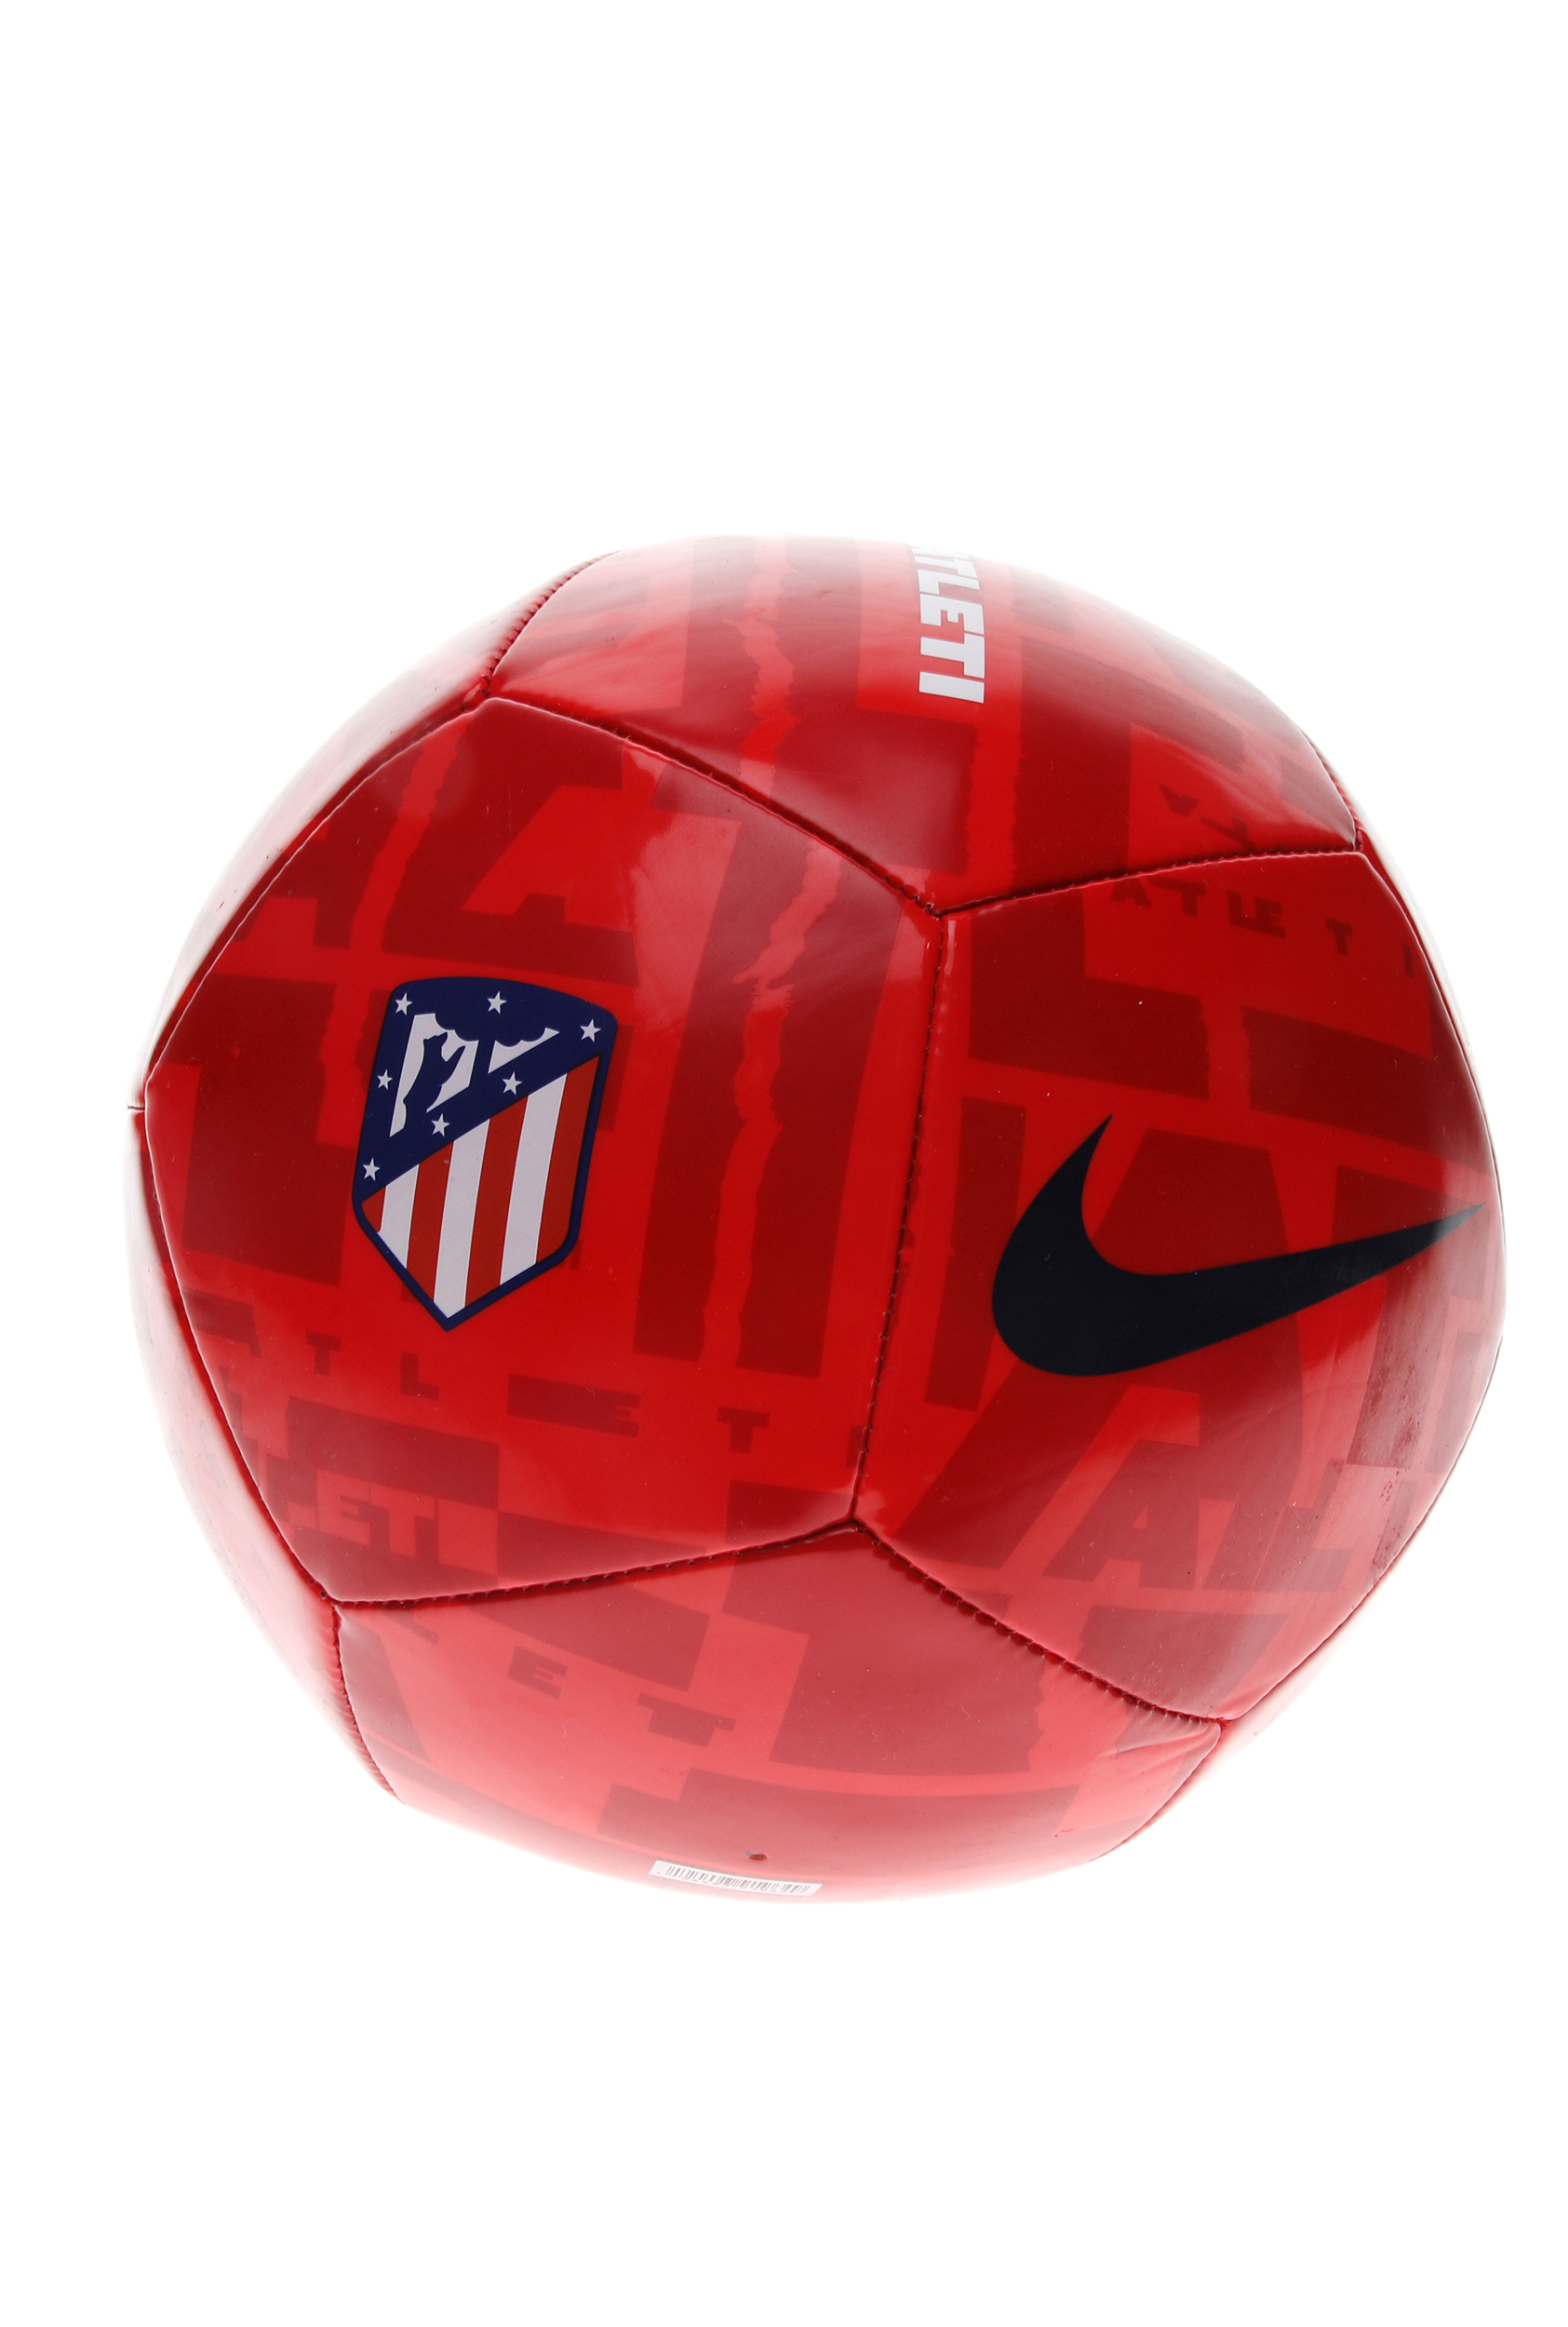 Ανδρικά/Αξεσουάρ/Αθλητικά Είδη/Μπάλες NIKE - Unisex μπάλα ποδοσφαίρου NIKE ATM PTCH - FA20 κόκκινη